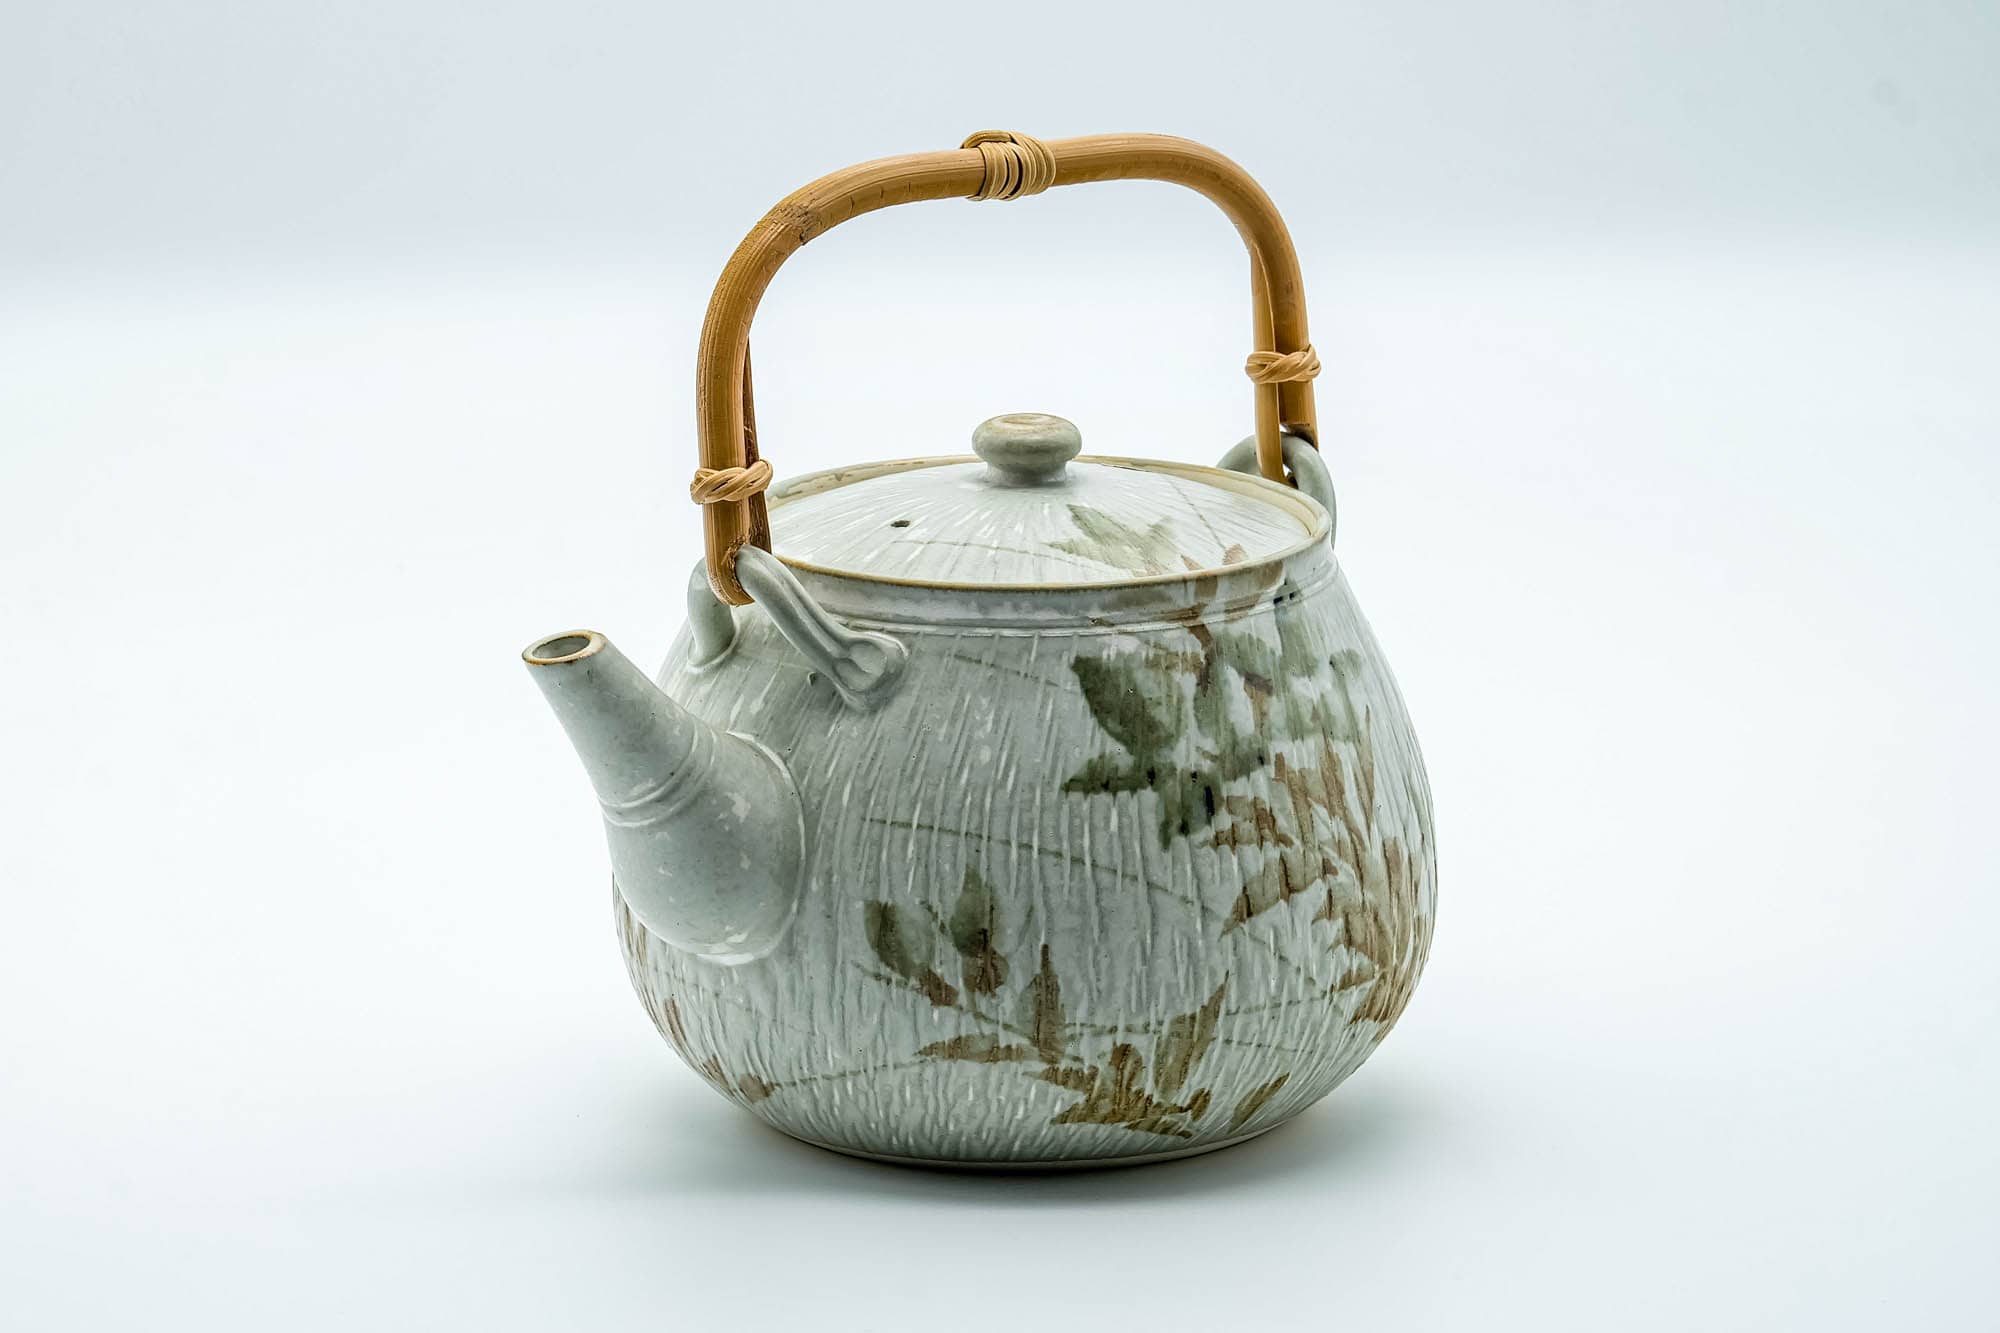 Japanese Tea Set - Beige Speckled Floral Kiyomizu-yaki Dobin Teapot with 5 Yunomi Teacups